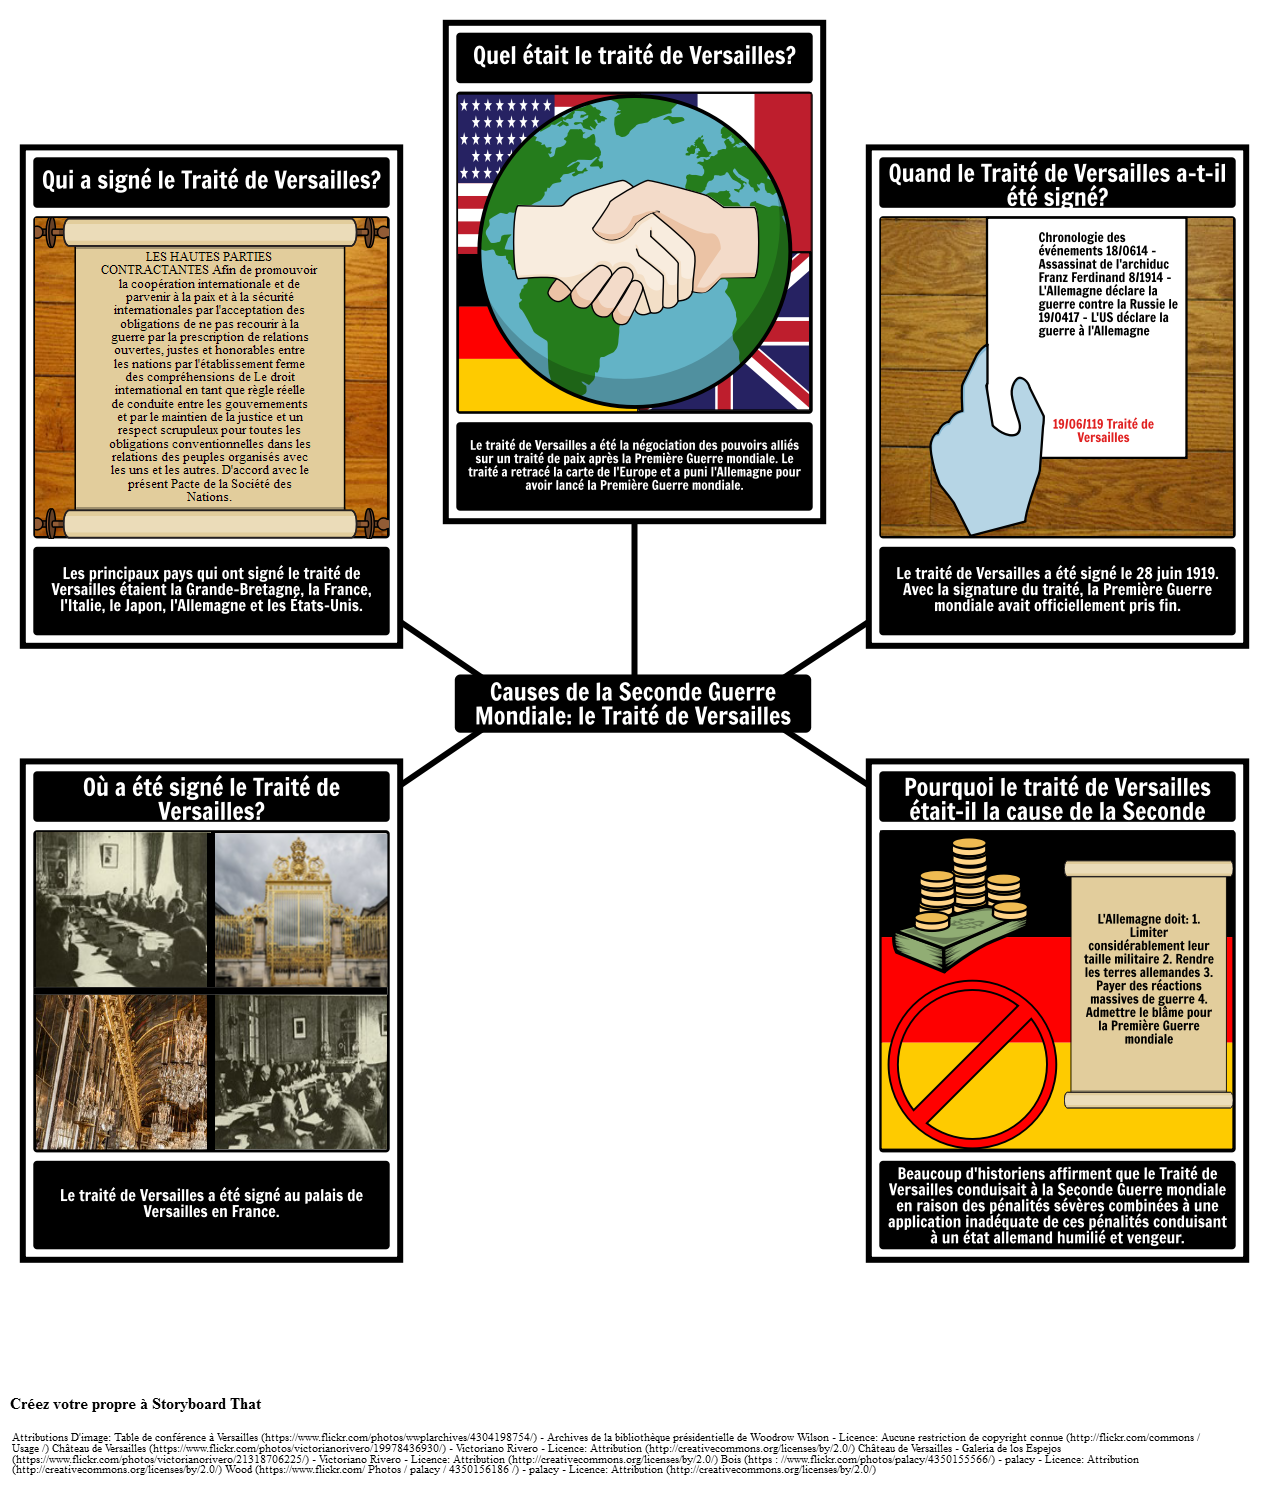 Causes de la Seconde Guerre Mondiale